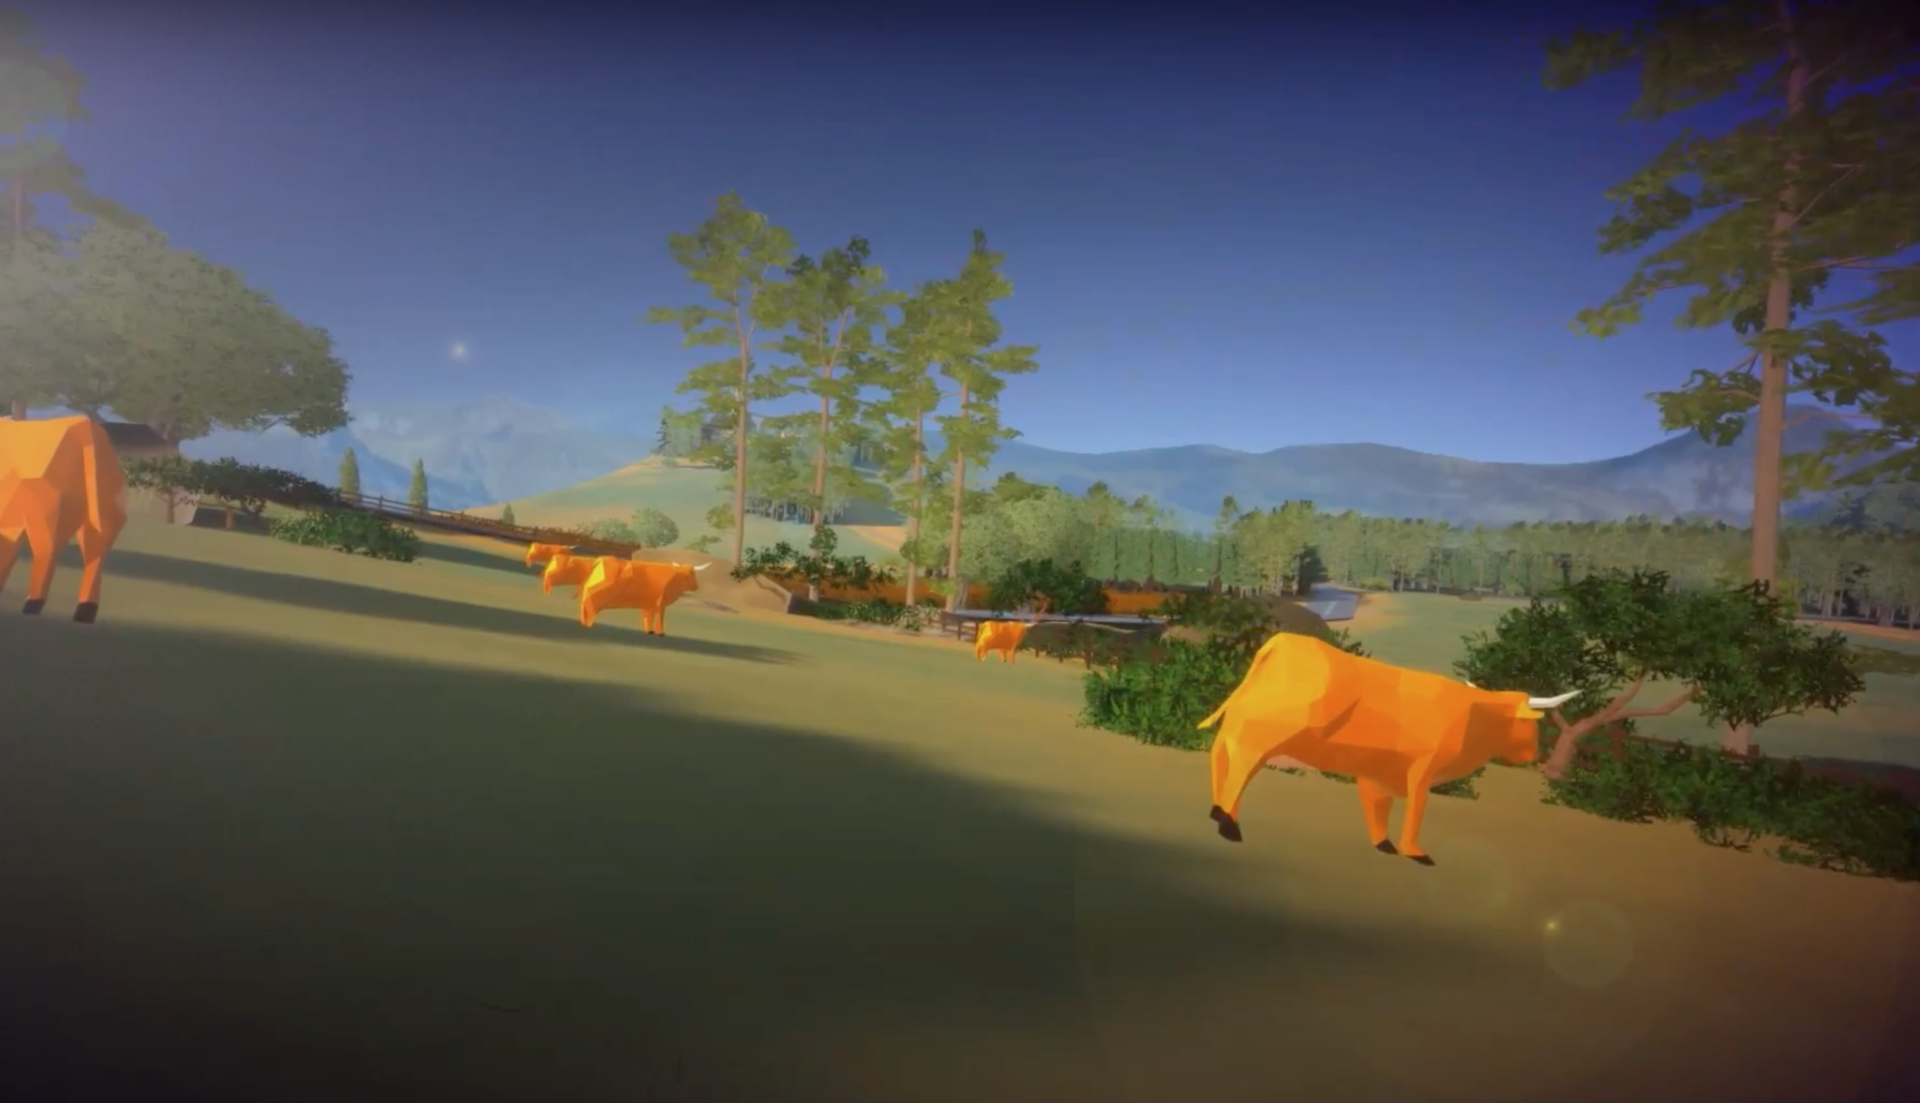 Un nouveau scénario en bovins : Jouez à être éleveur bovin dans le Cantal !